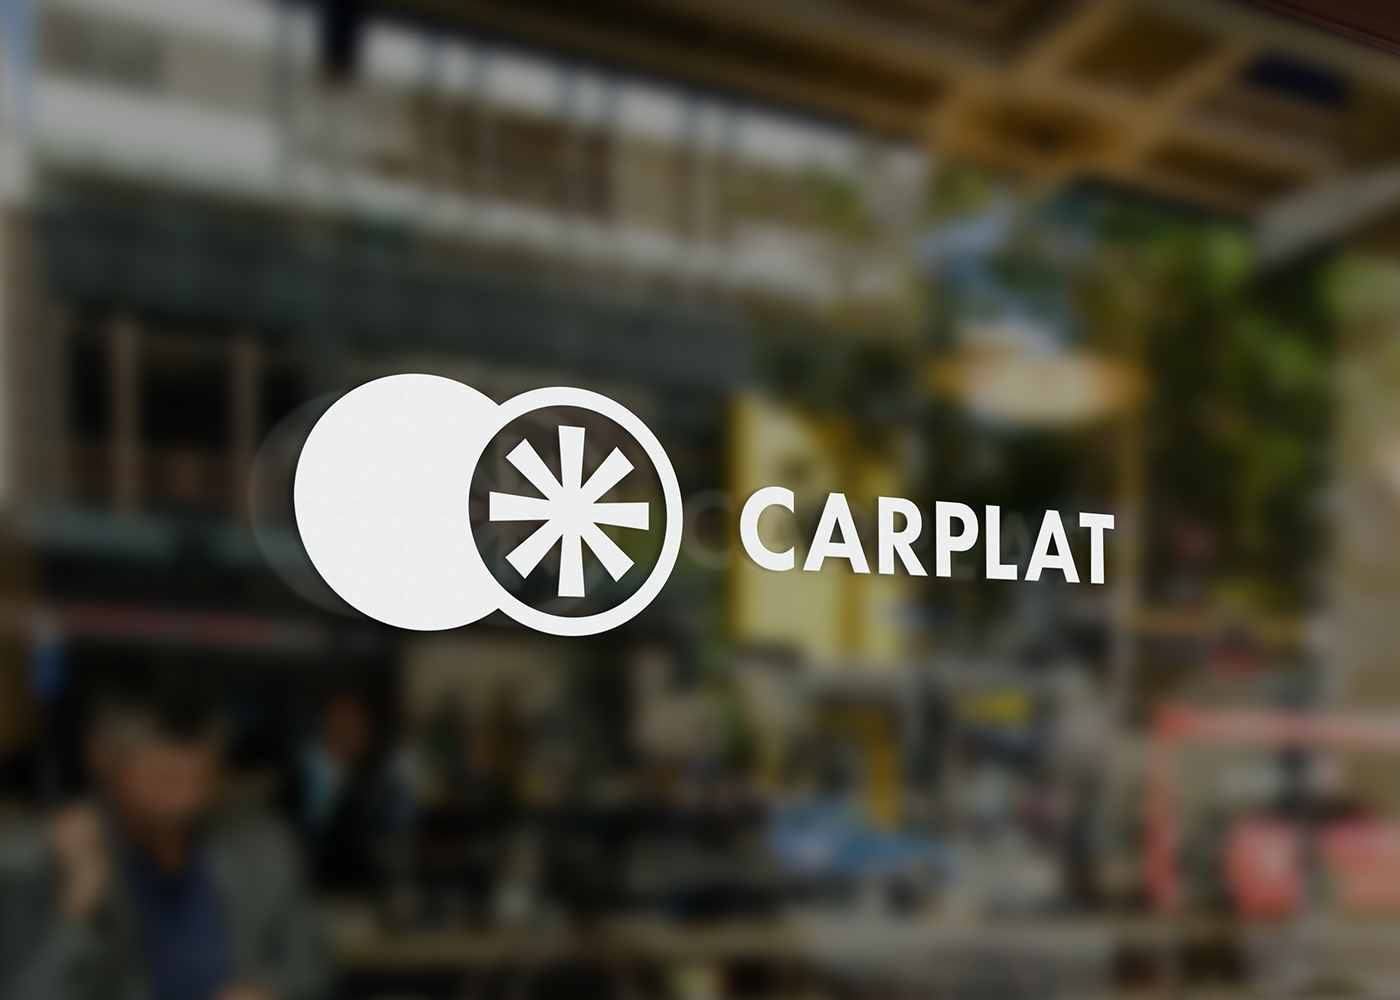 carplat flower logo symbol brand wheel car rentacar adobeawards